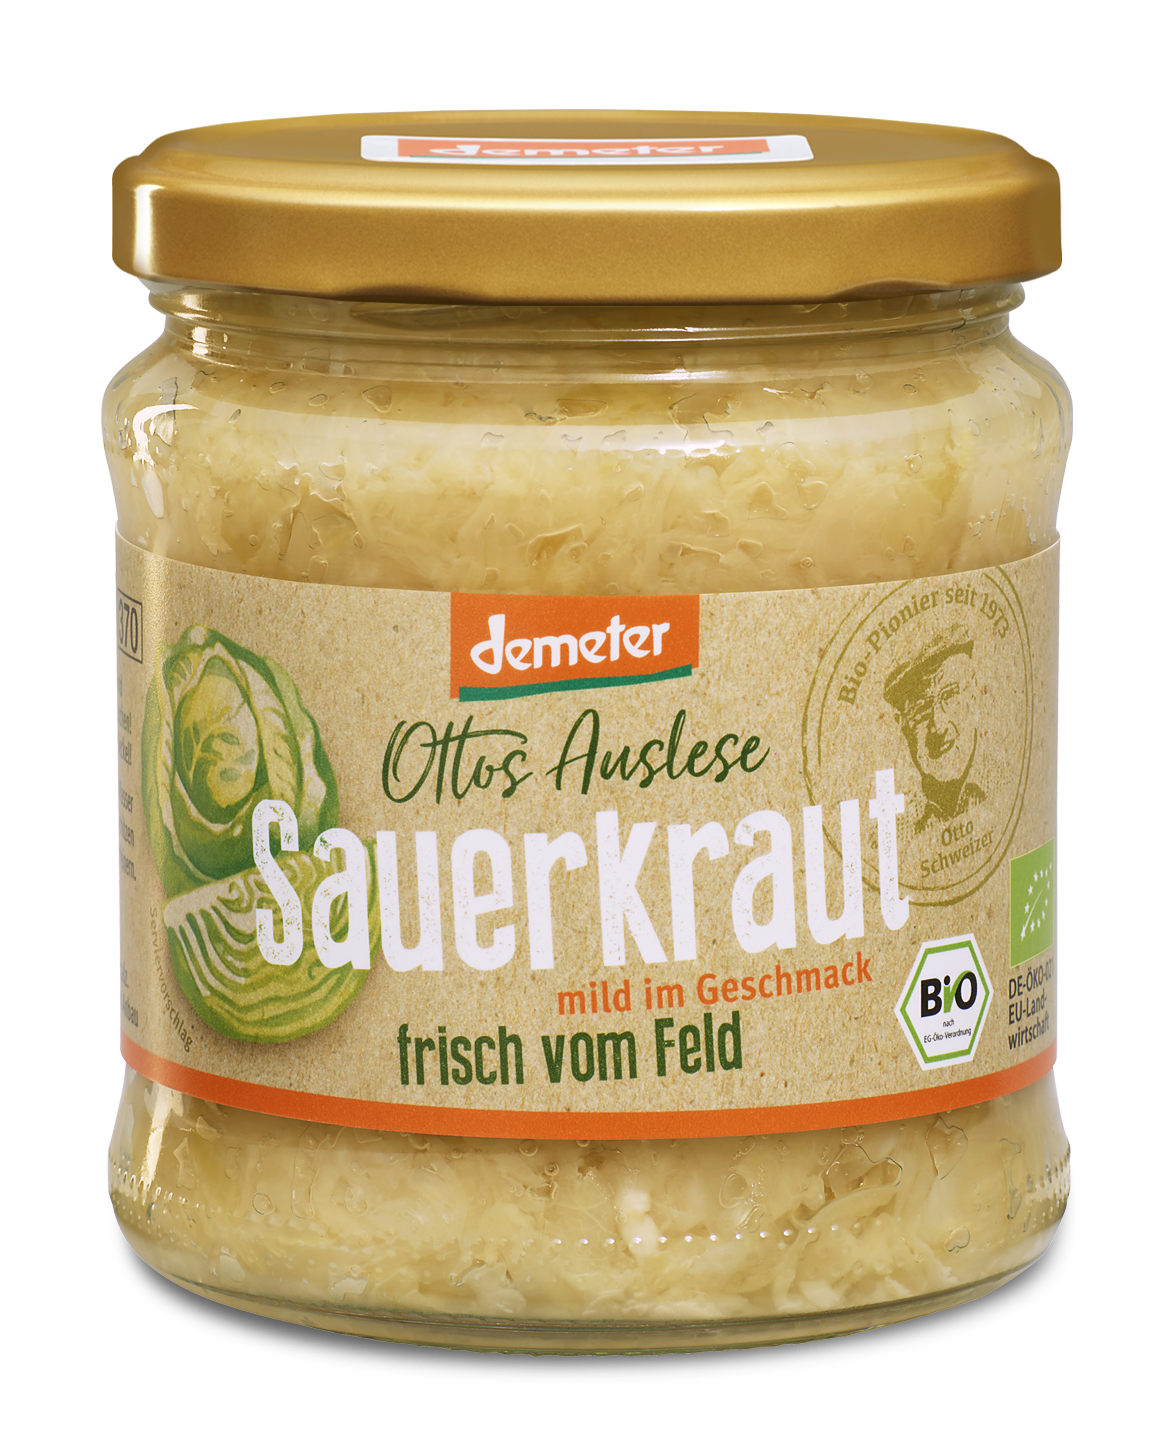 Demeter Sauerkraut 370 ml